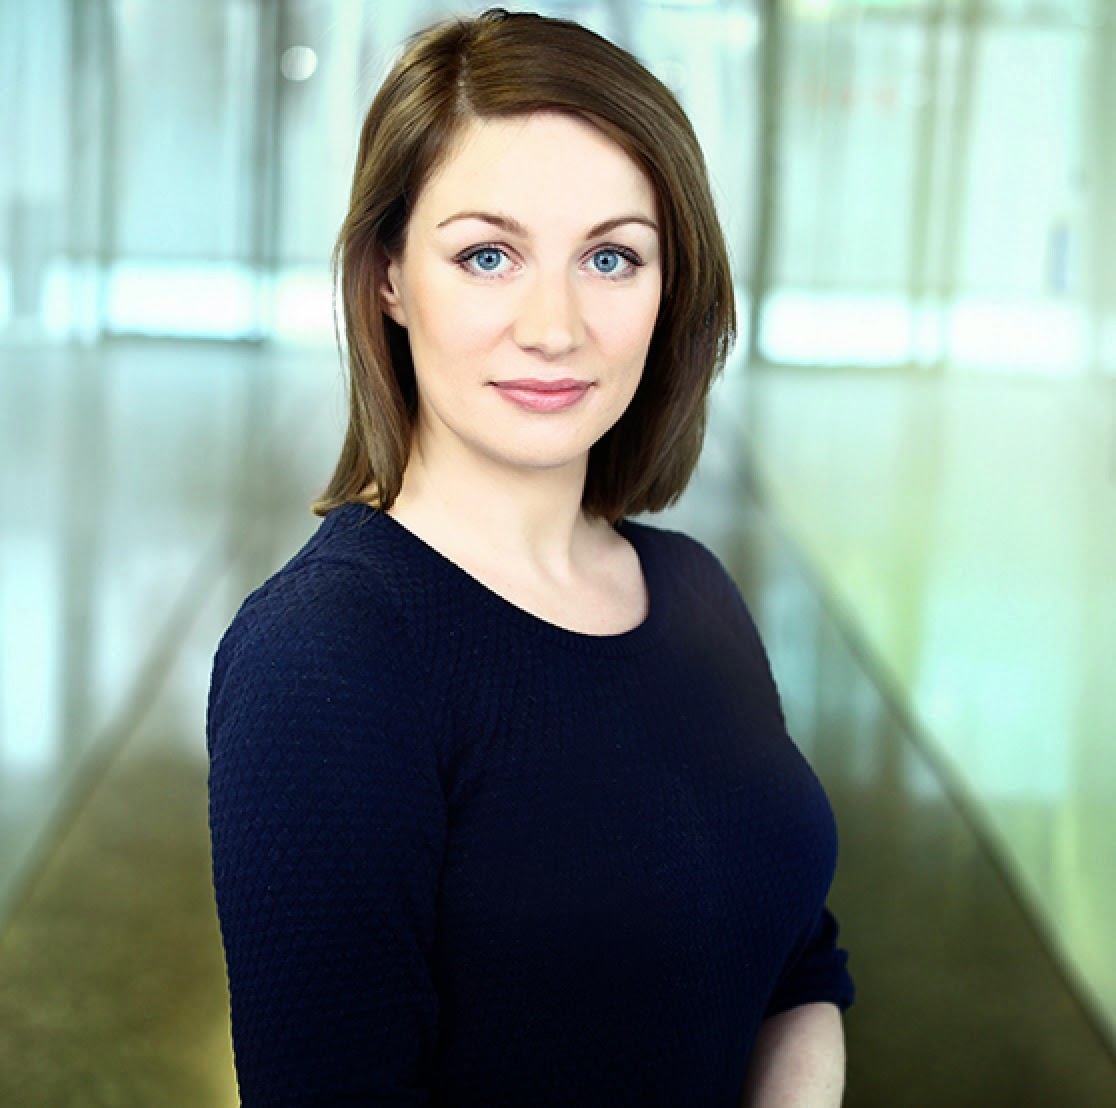 Agata Polińska, Brand Manager